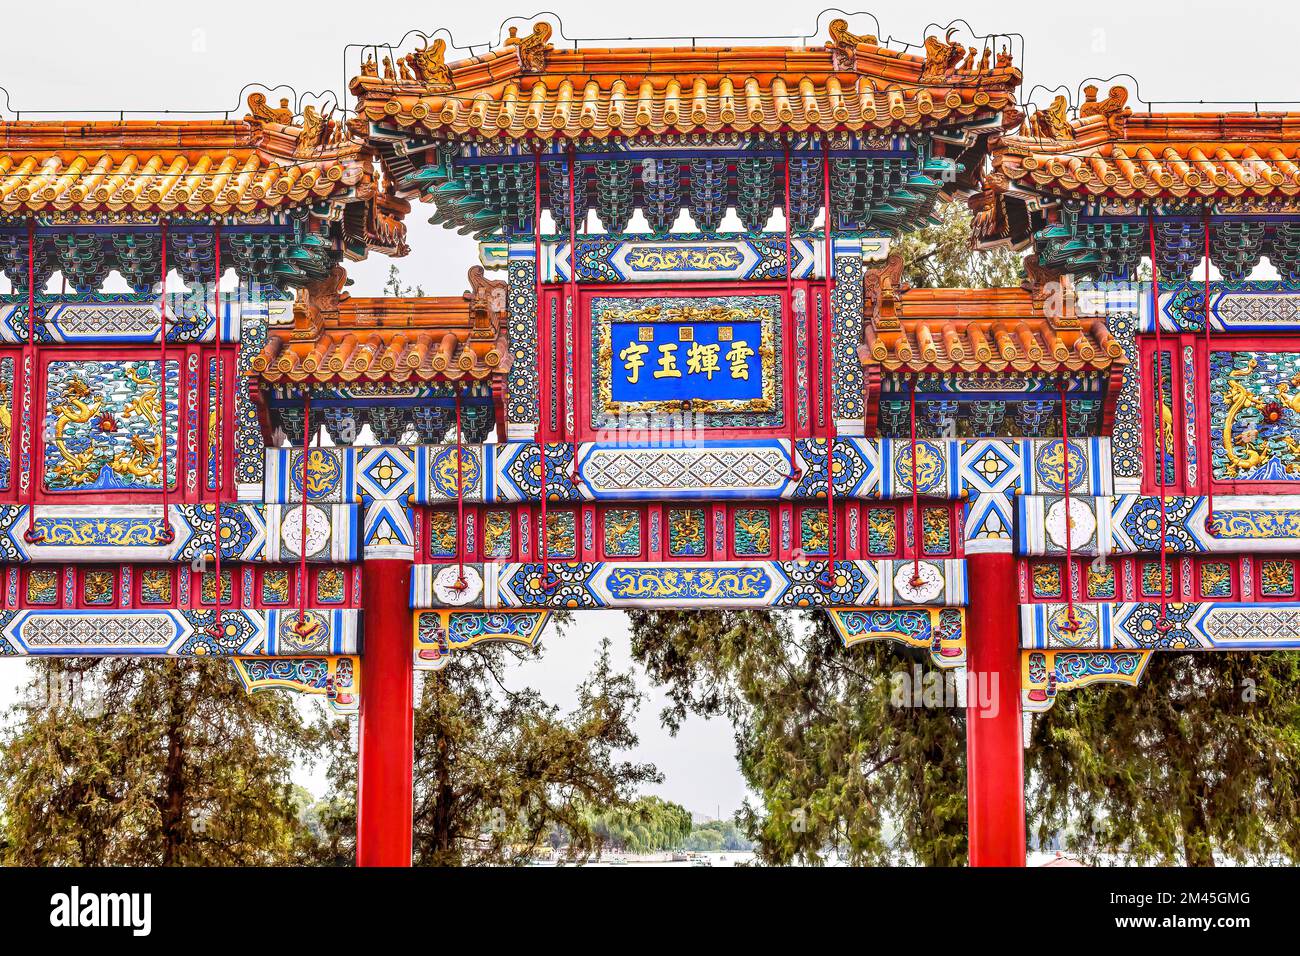 Red White Dragon ornate porta arancione piastrelle Summer Palace Pechino Cina personaggi cinesi dicono "Glacy Cloud Lots of Jade" Foto Stock